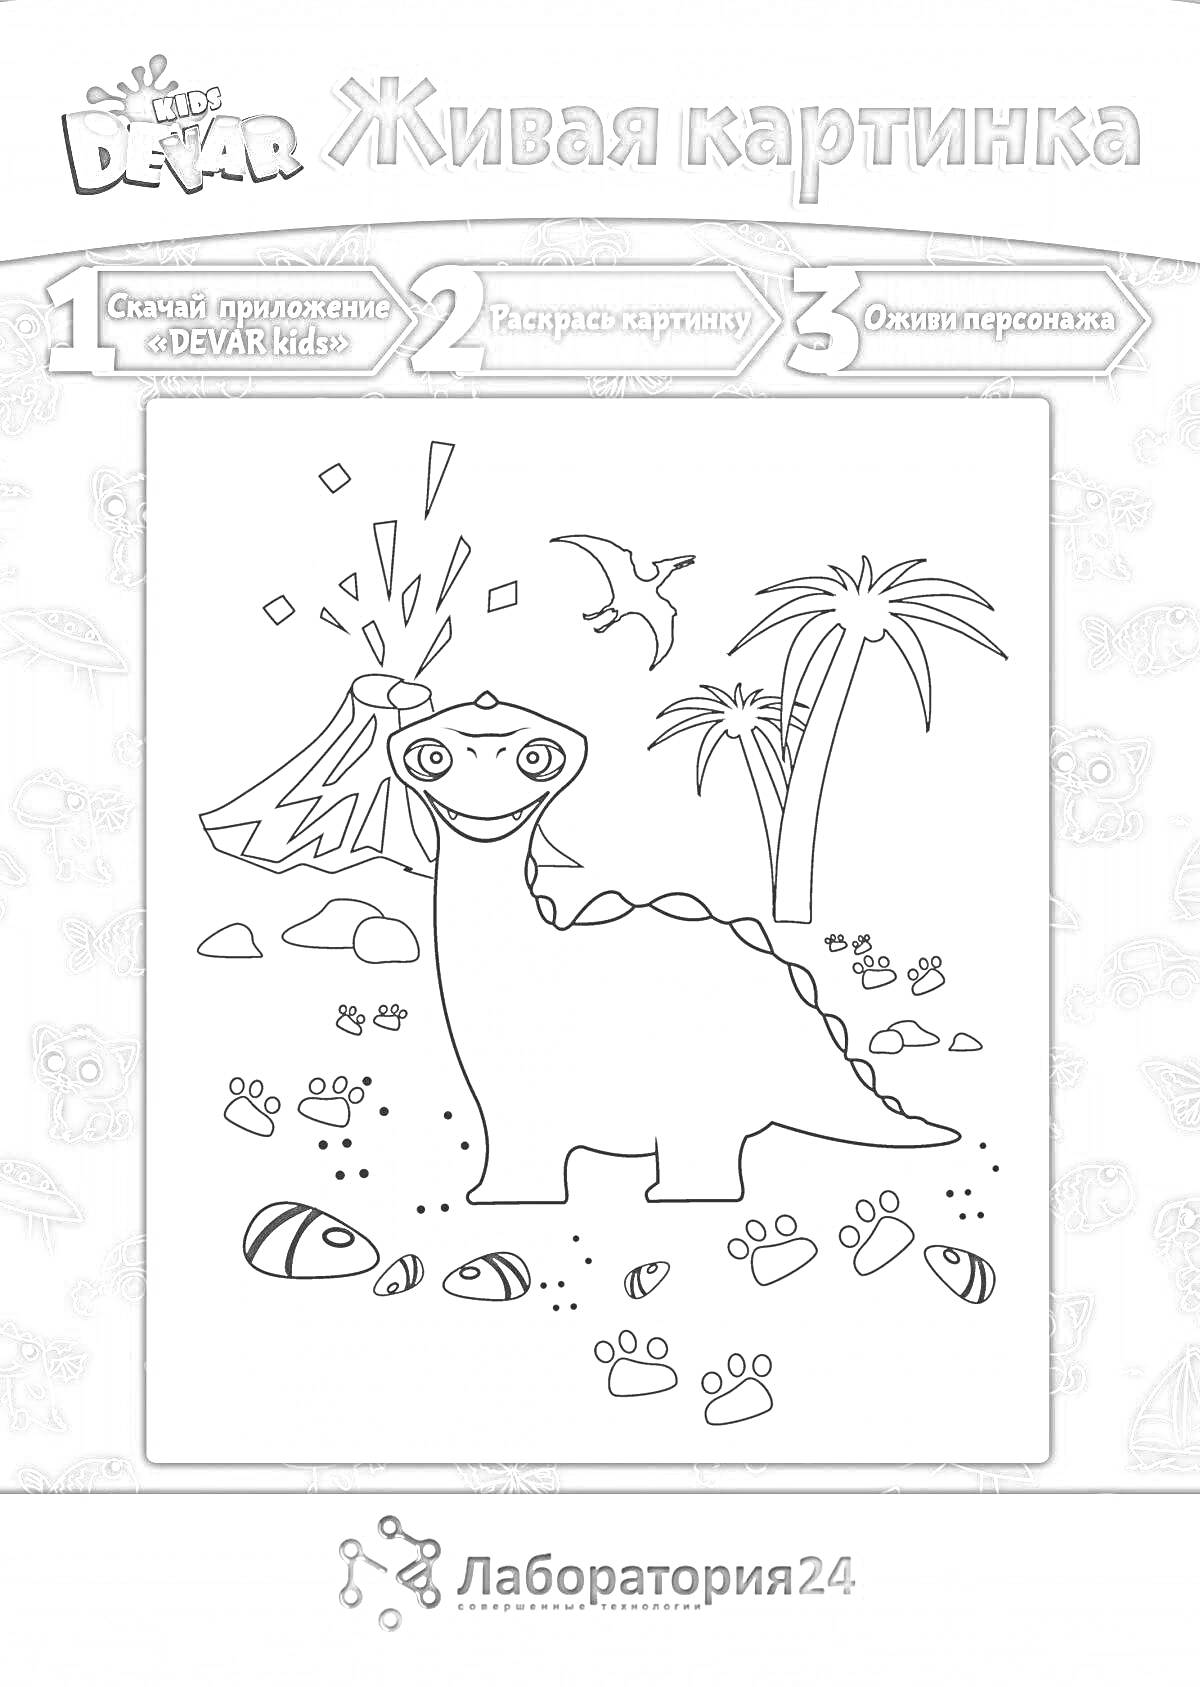 Раскраска Динозавр среди деревьев и природы, с камнями, вулканом, и следами на земле